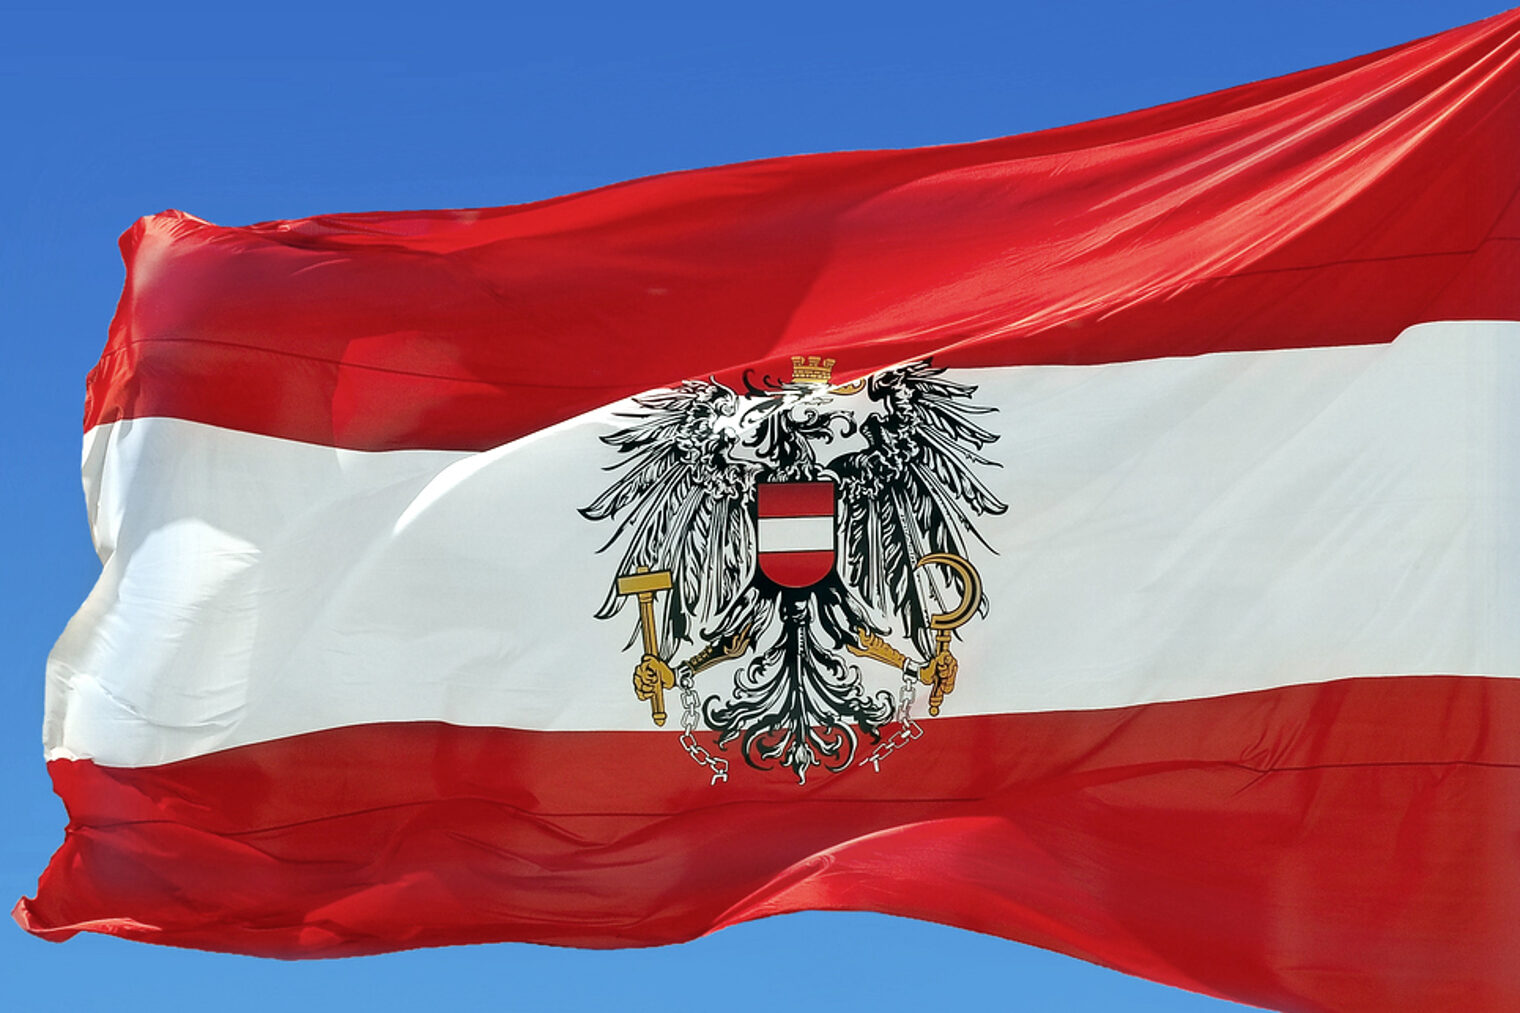 Flagge, Österreich, wehen, Wind, Österreichische Flagge, rot, weiß, National, Symbol, blauer Himmel, Fahnenmast emblem, fabric, flag, austria, austrian, national, red, white, sky, symbol, waving, wind, clear, sky, blue, pole